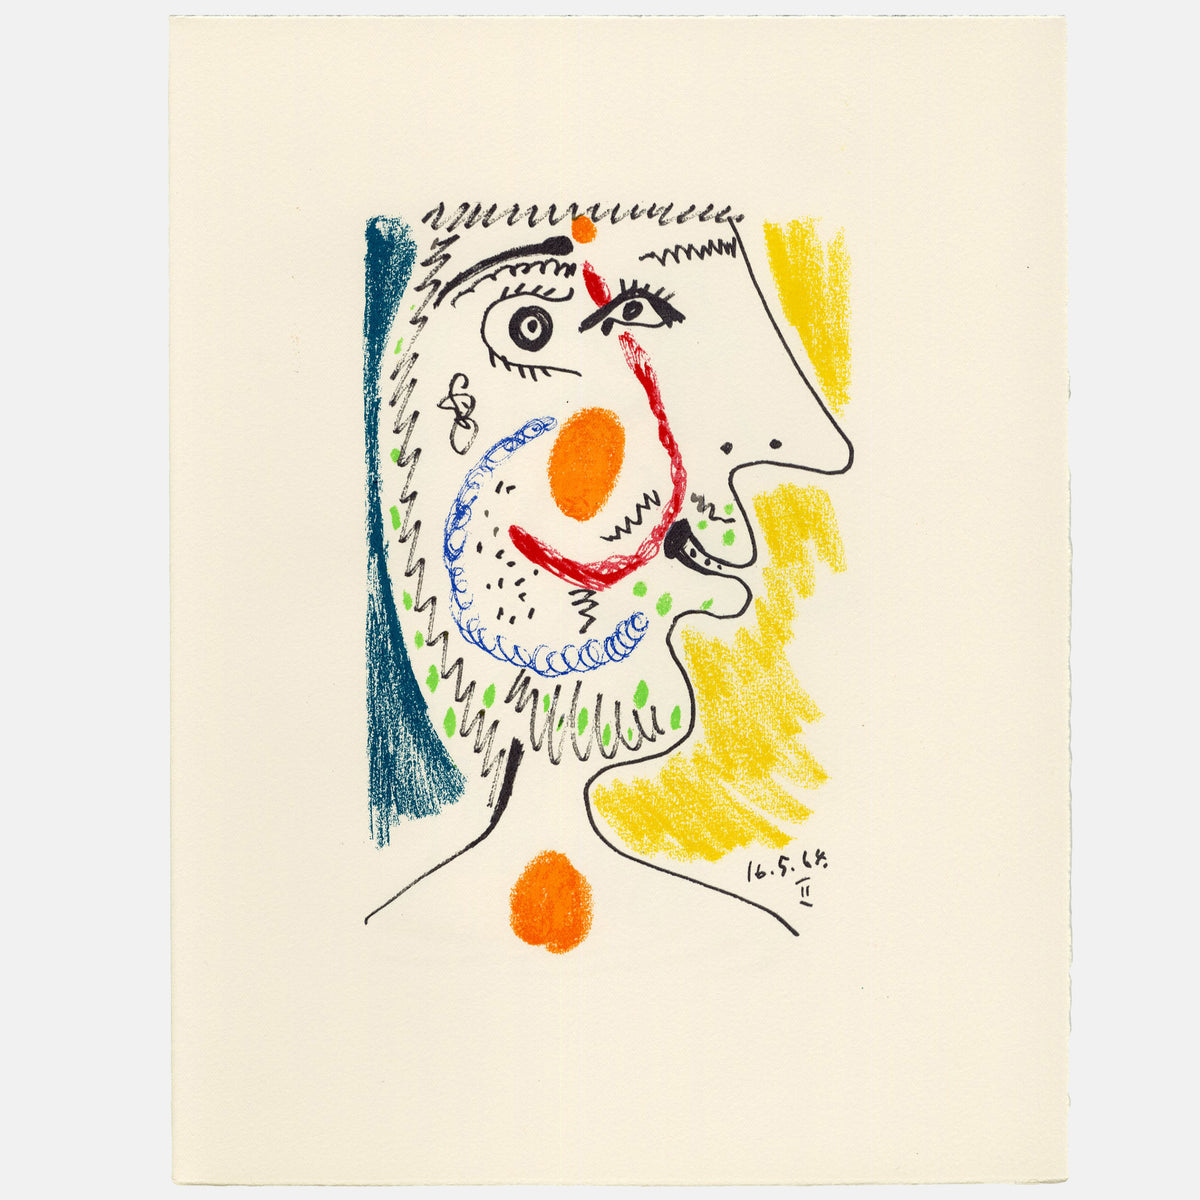 Pablo Picasso - 1970 Lithograph - 12.675 x 9.75&quot;